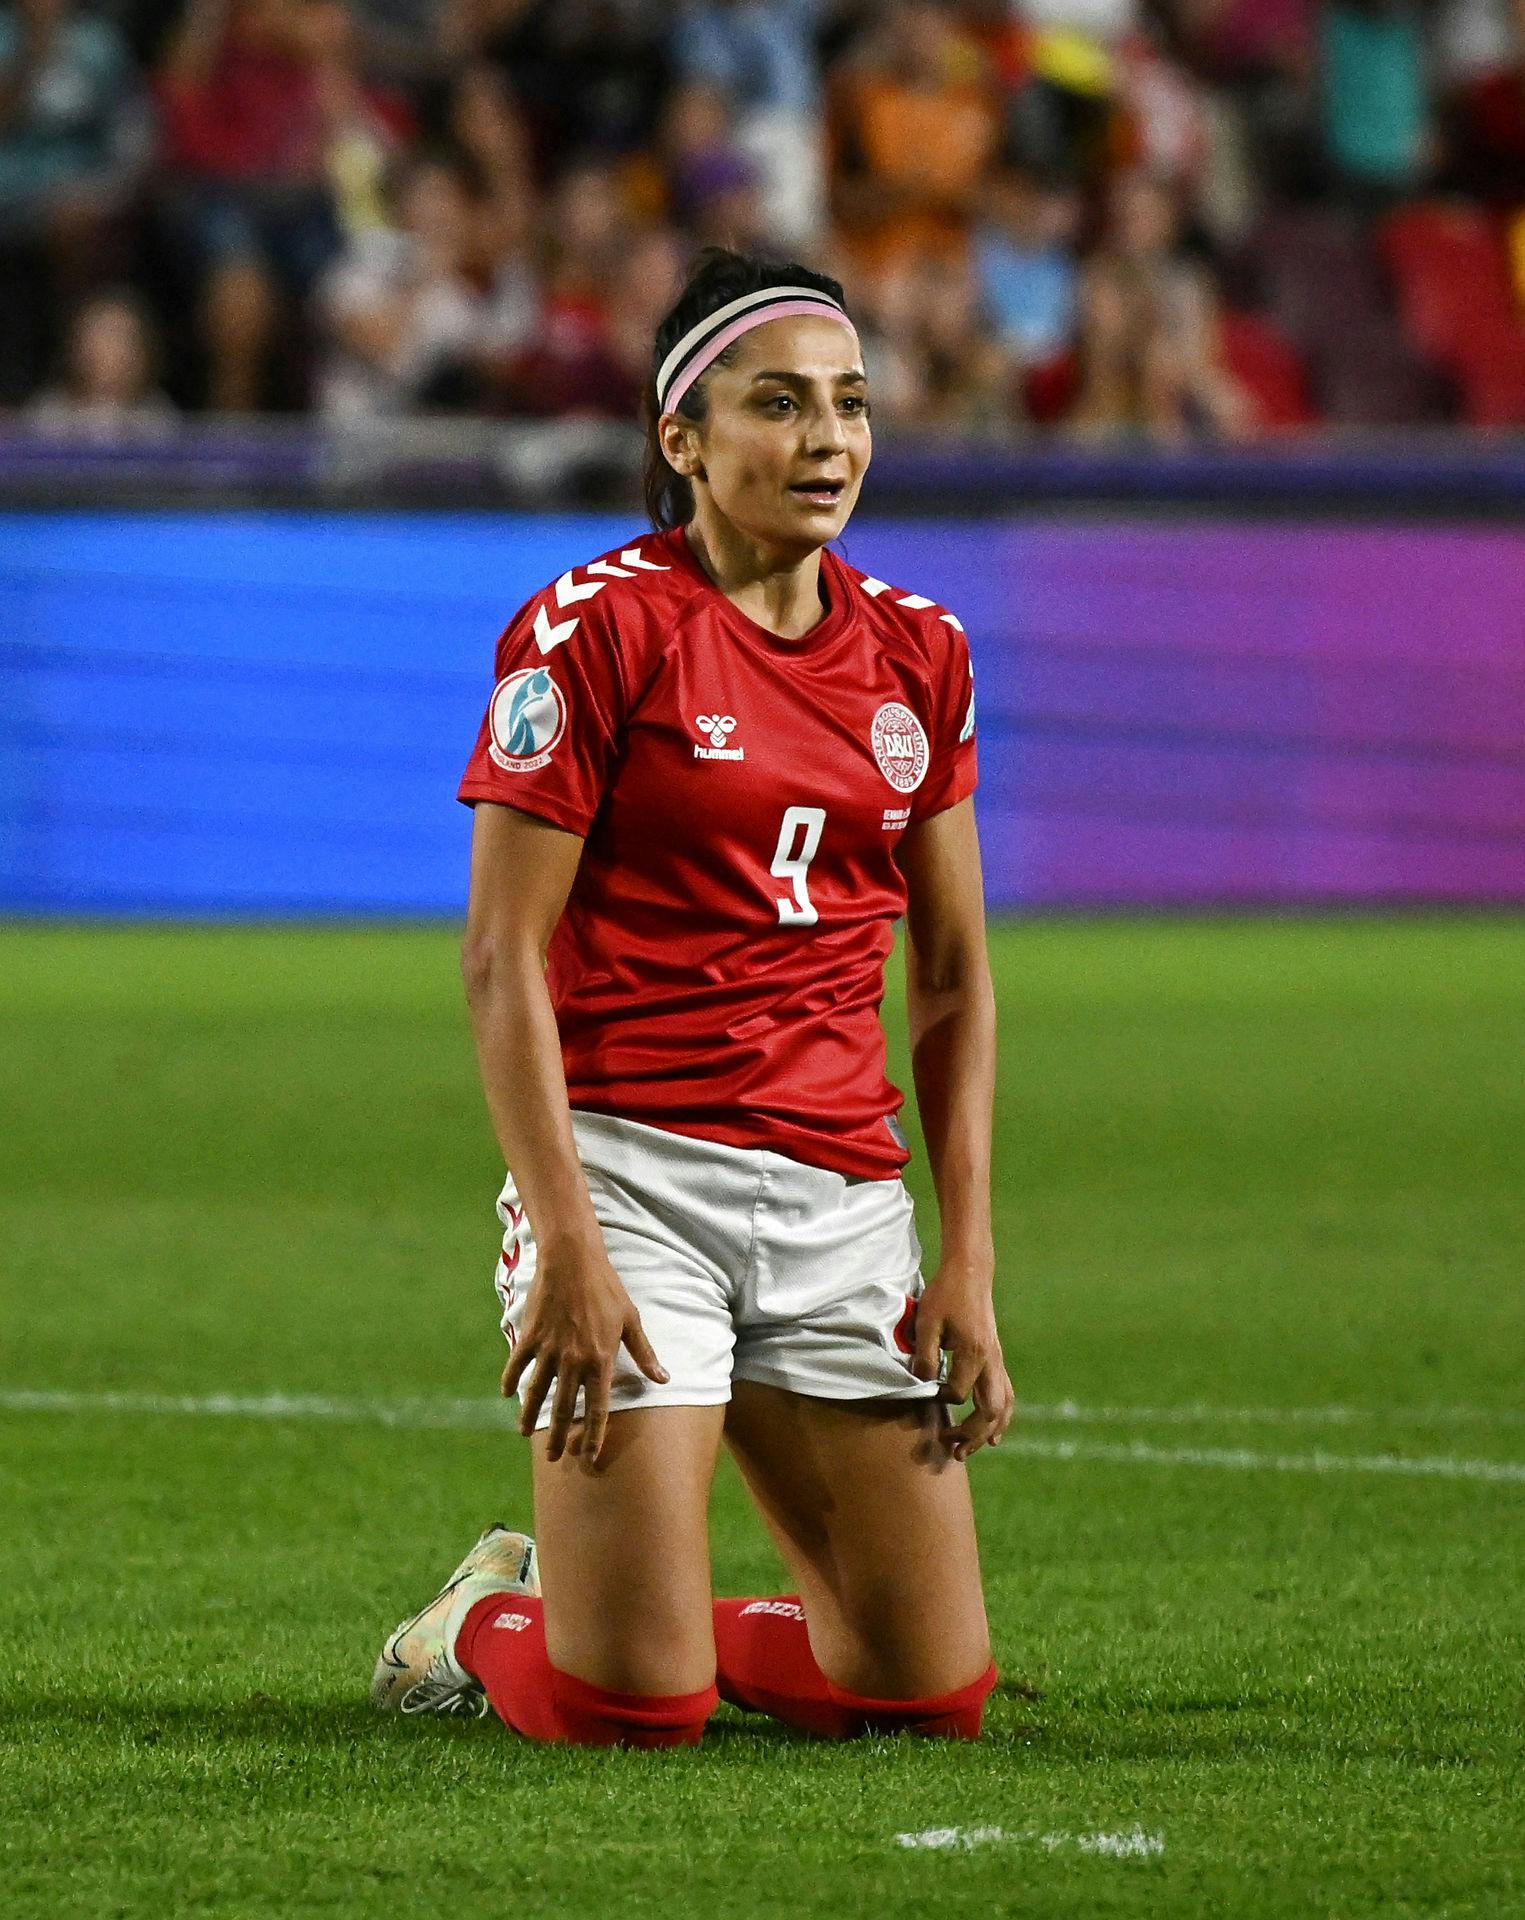 For Nadia Nadim handlede det udelukkende om kærligheden til fodbold, da hun takkede ja til at være ambassadør. Før hun kom til Danmark, anede hun ikke, at kvinder også kunne dyrke hendes elskede sport. Den vil hun via sit ambassadørskab udbrede til k